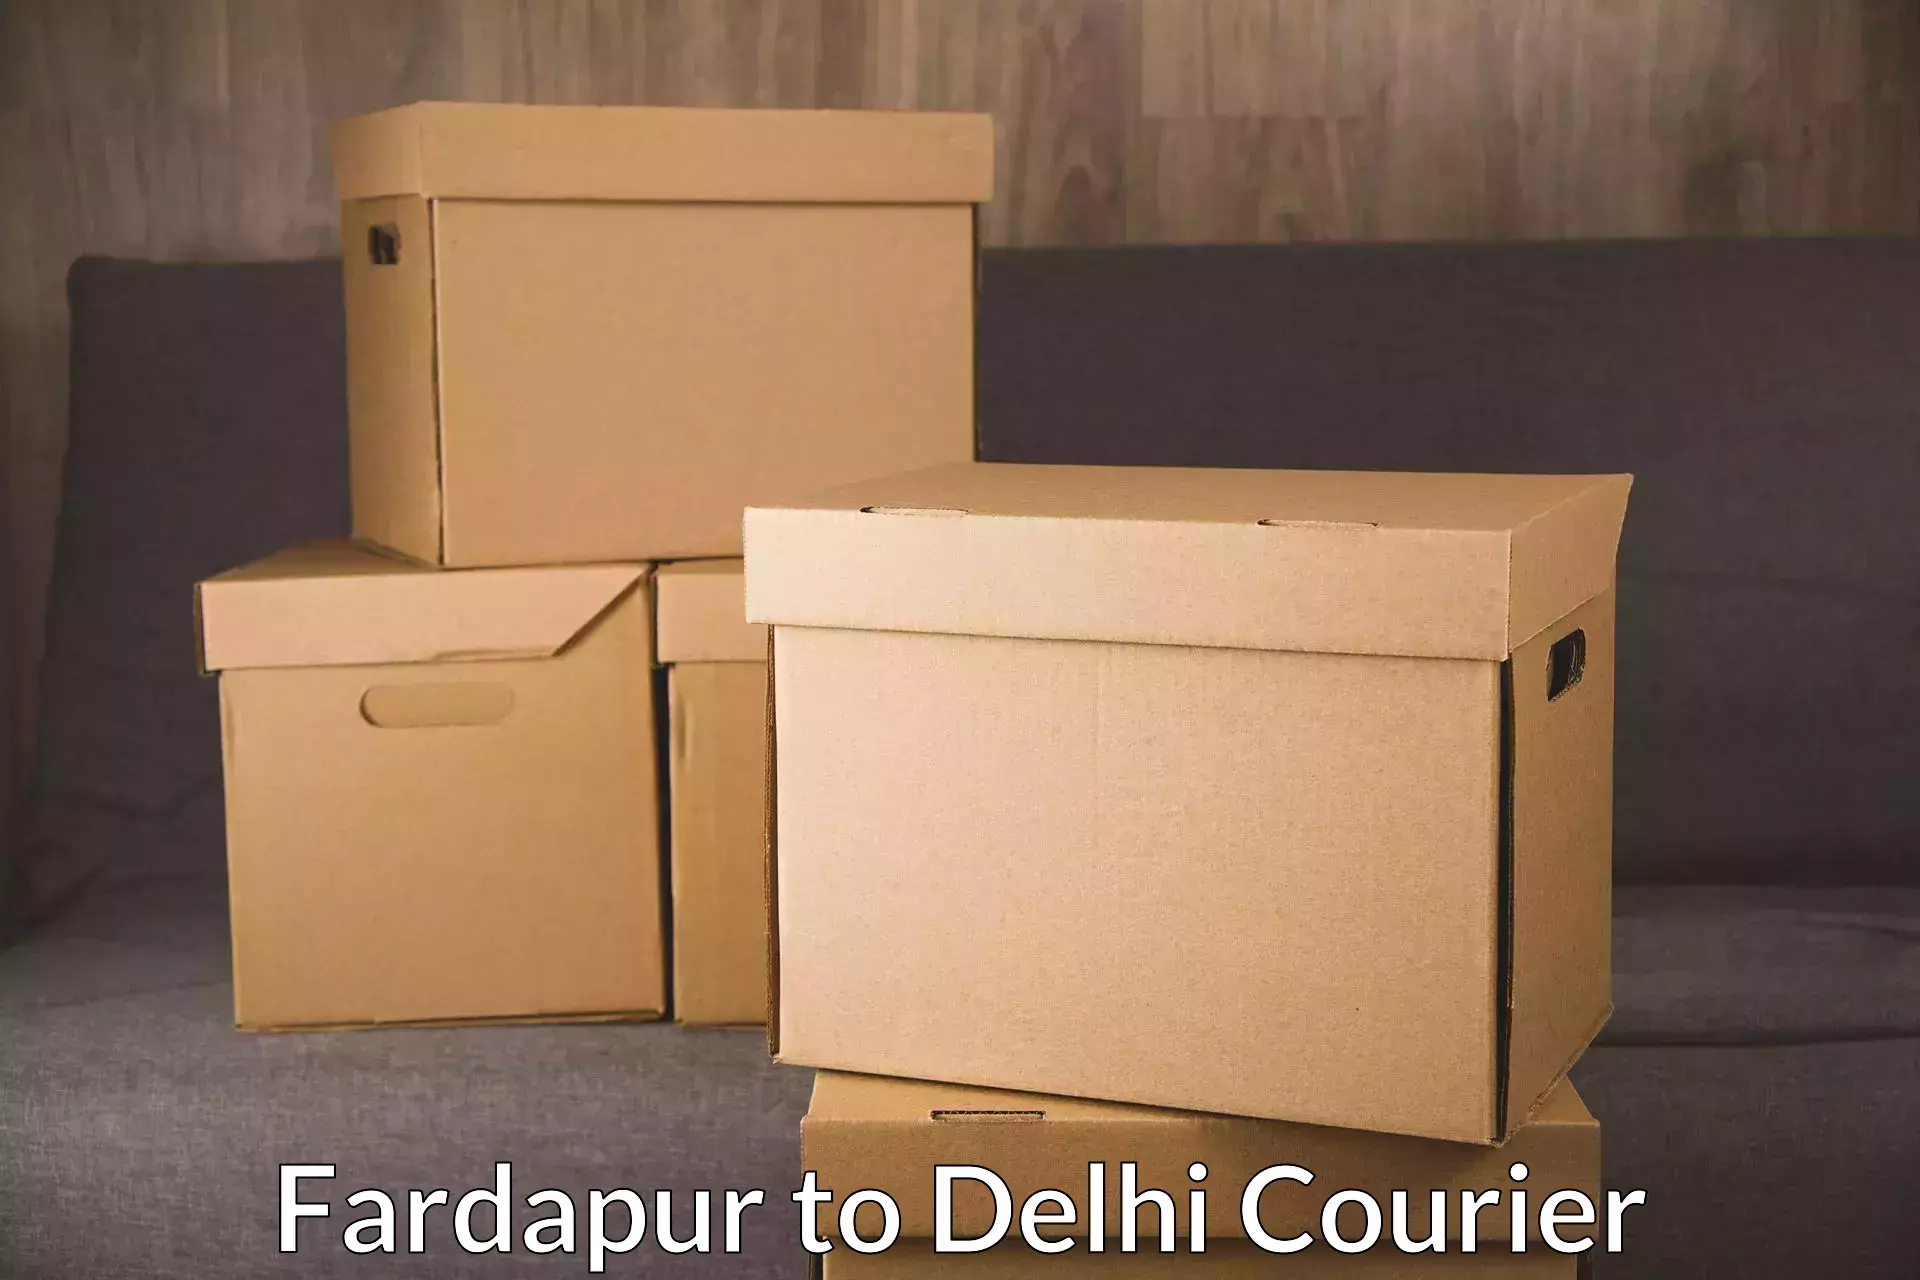 Flexible parcel services Fardapur to Delhi